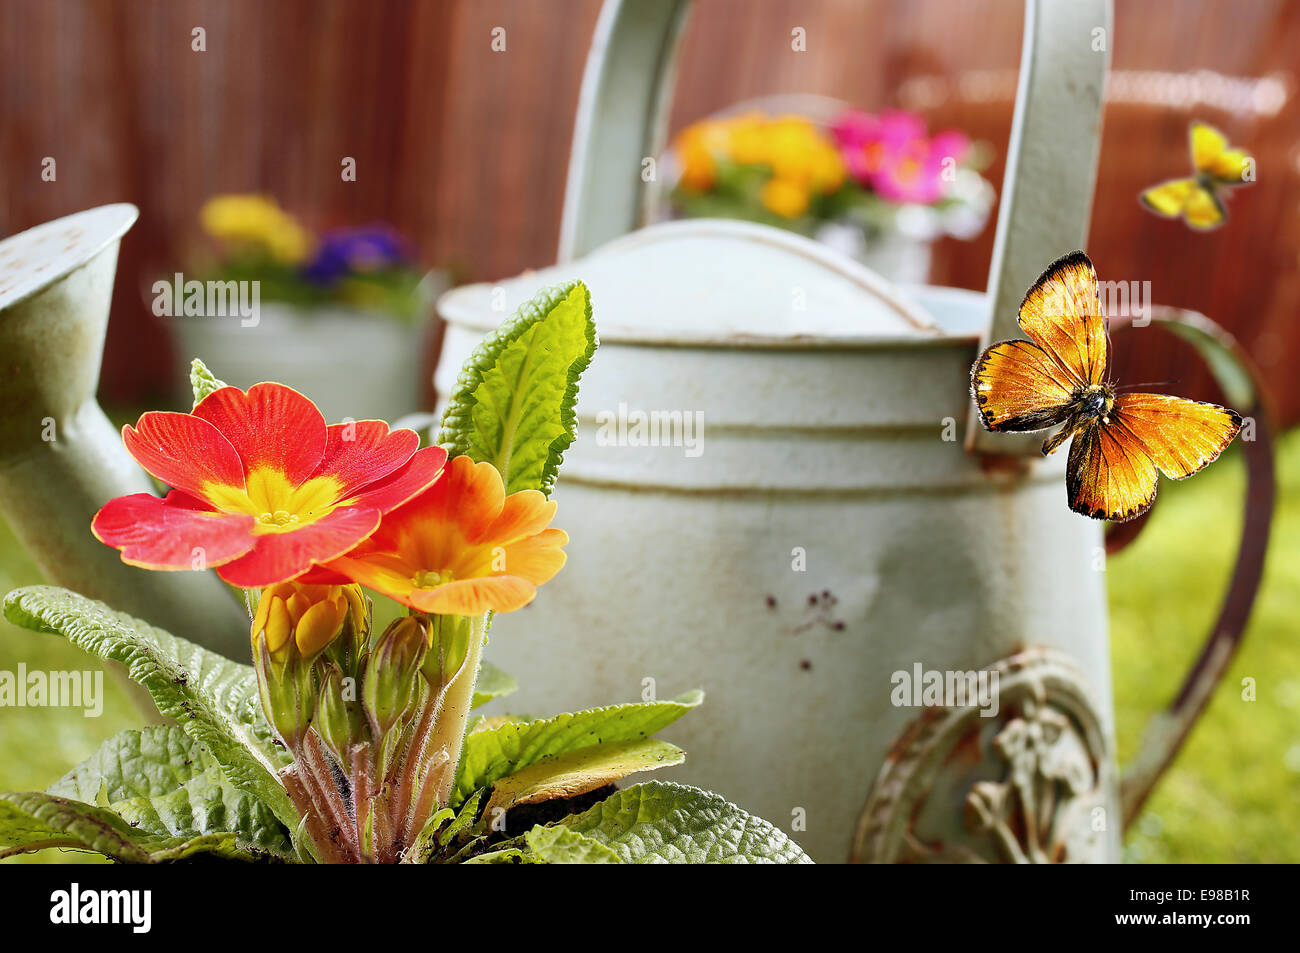 Immagine concettuale di un estate country garden con un vecchio metallo retrò annaffiatoio, vivido arancione fiori ornamentali e volare farfalle con dof poco profondo Foto Stock